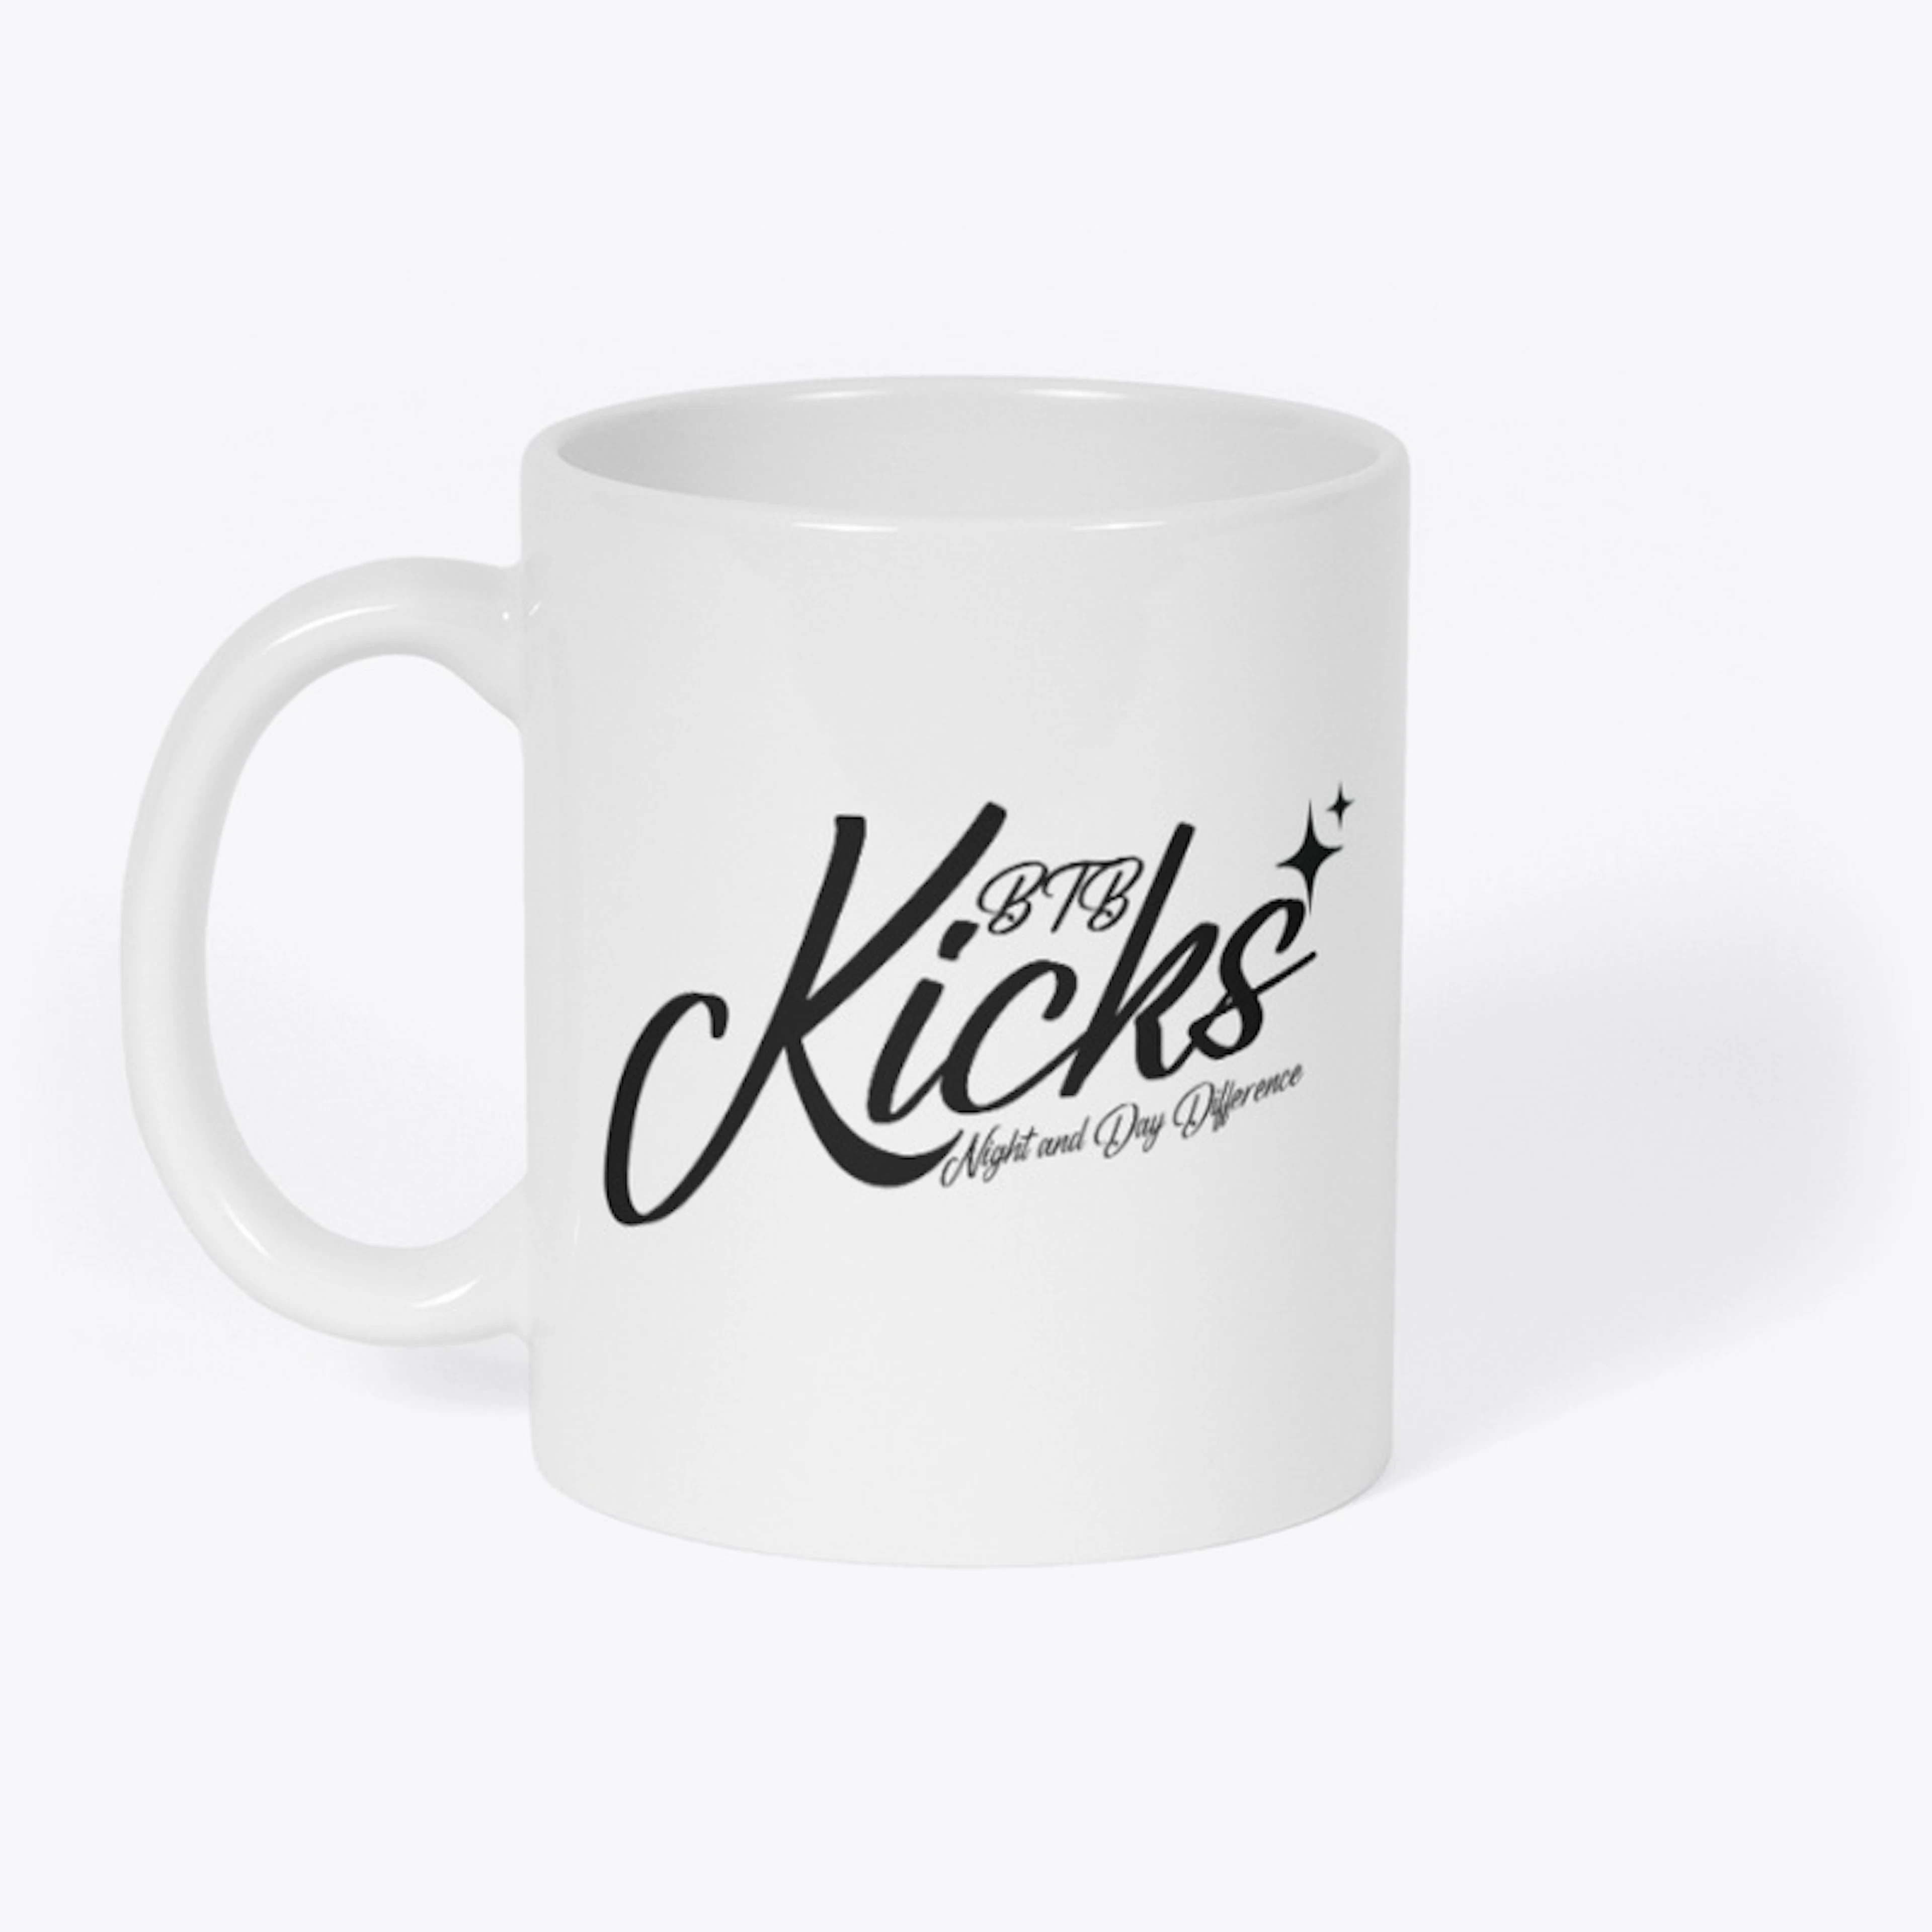 BTB Kicks Clientele Mug